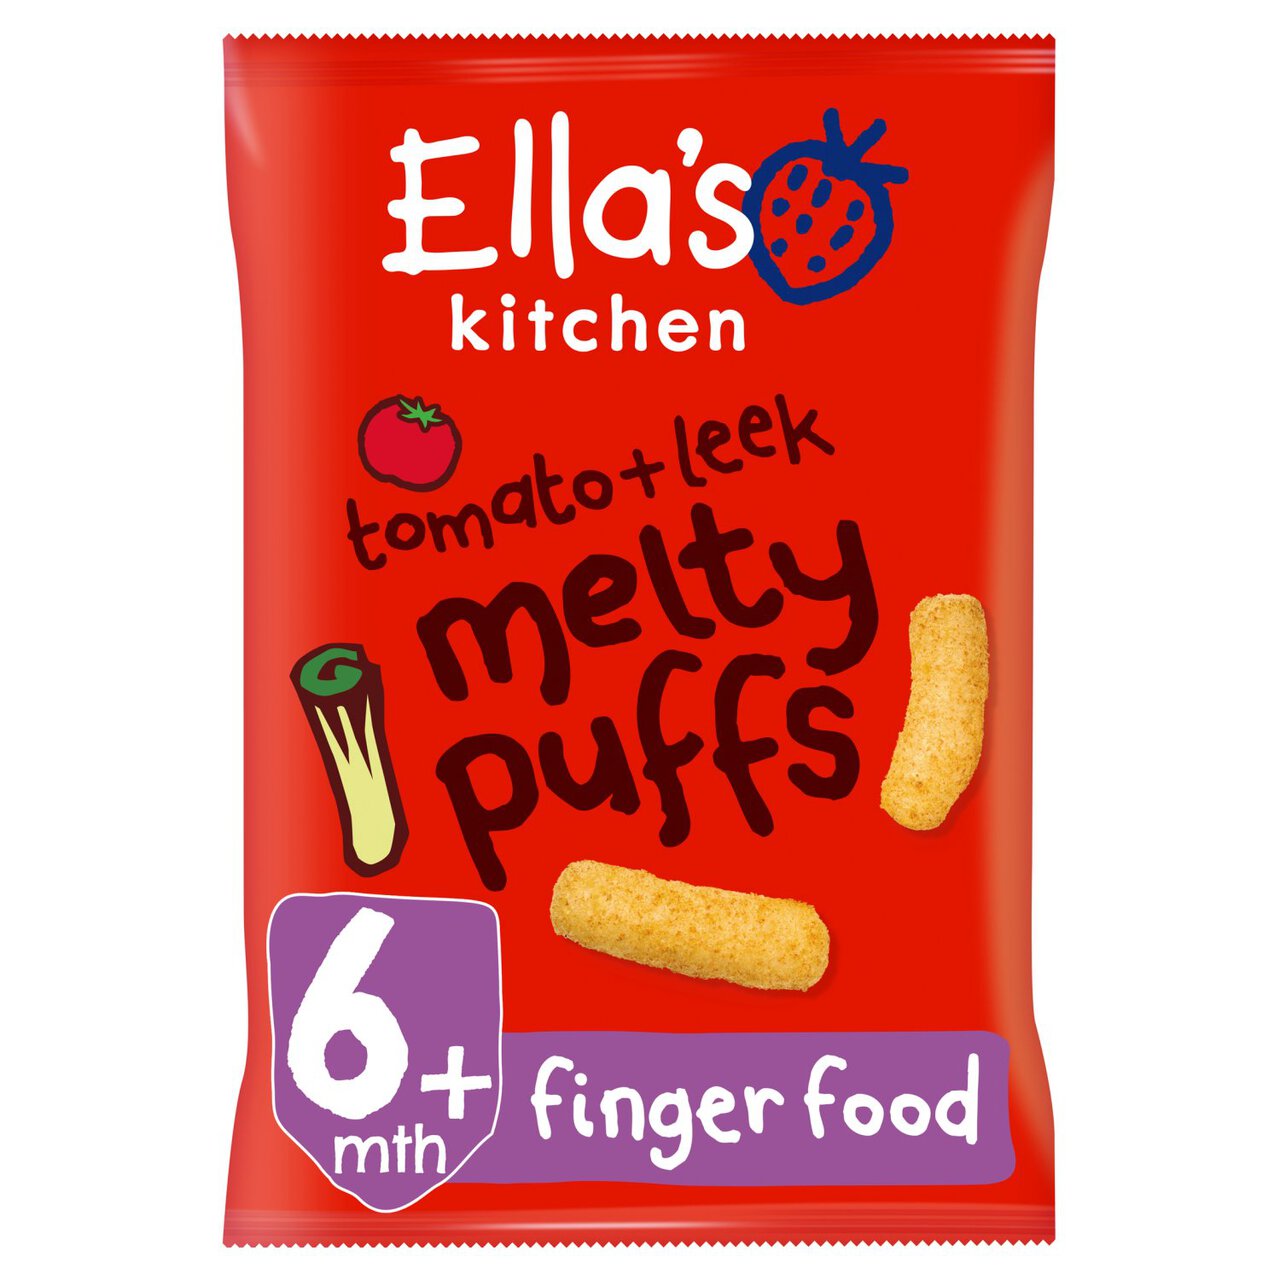 Ella's Kitchen Organic Tomato & Leek Melty Puffs Baby Snack 6+ Months 20g 20g